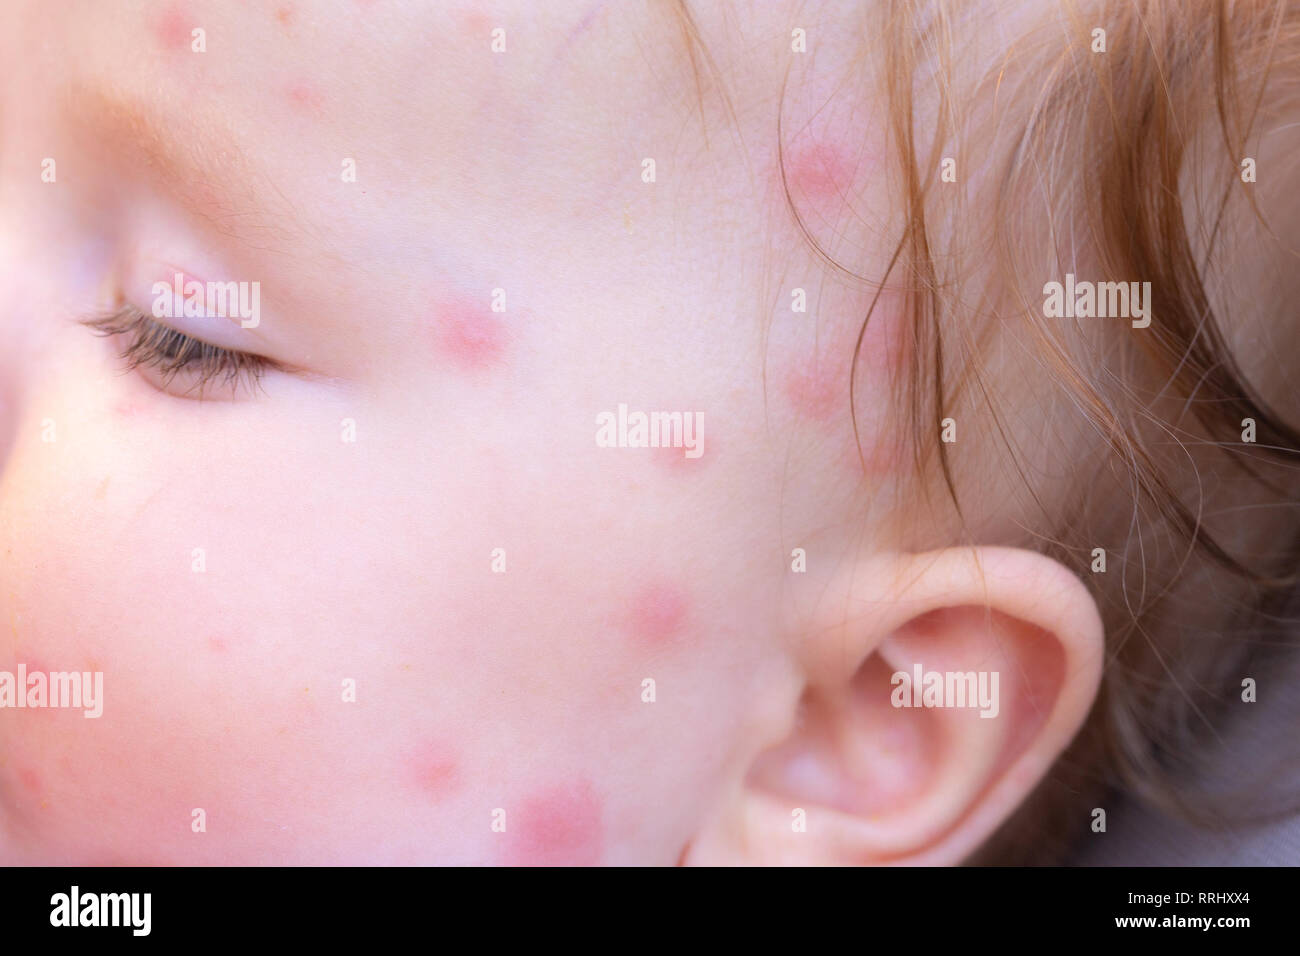 Les Piqures De Moustiques Dans Le Visage D Un Petit Bebe En Ete Photo Stock Alamy